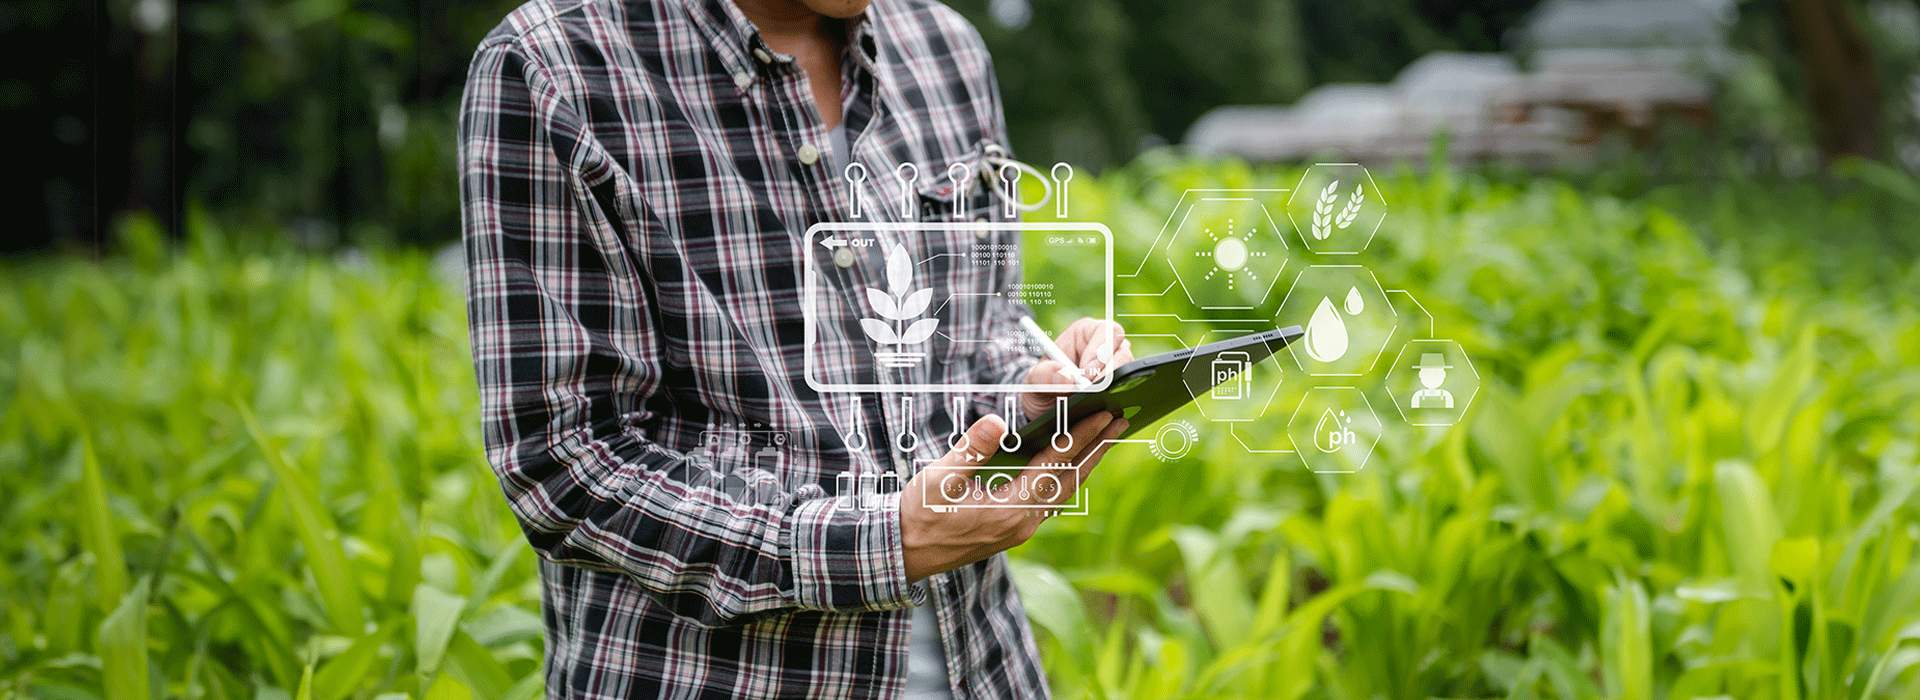 hombre en el campo de cultivo sosteniendo tablet con graficos alusivos a tecnologia alimentaria sobrepuestos 